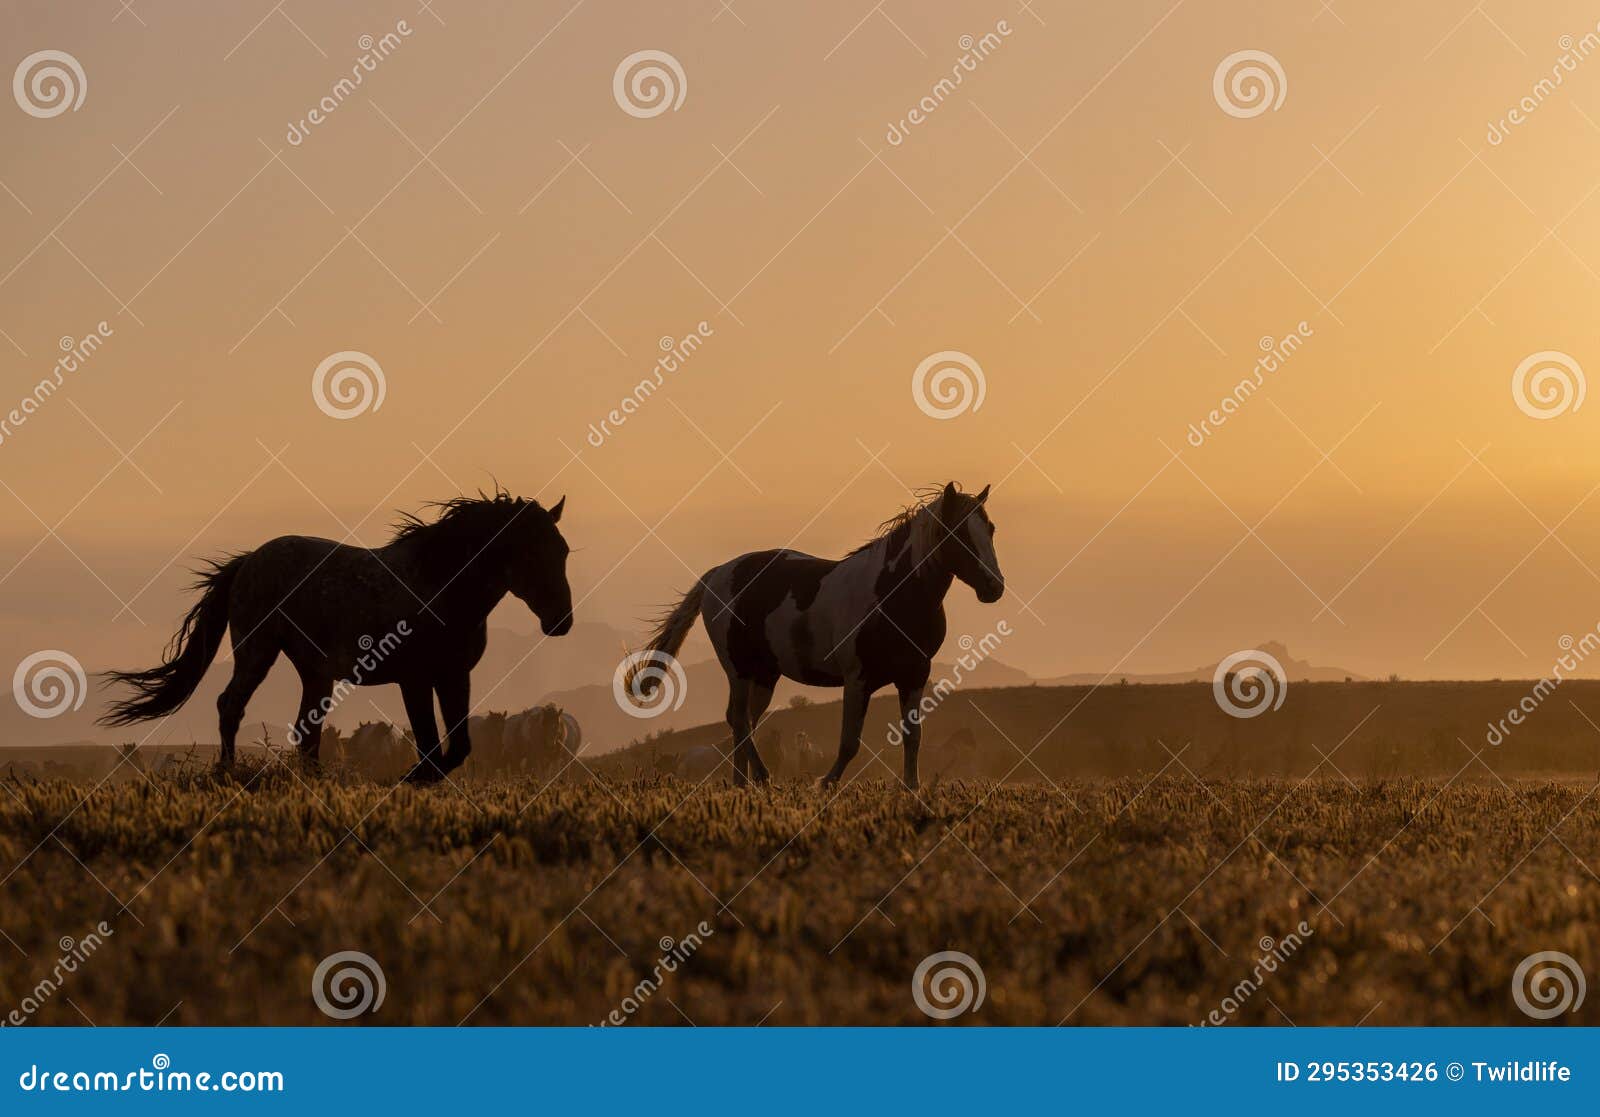 wild horses in the utah desert at sunset in springtime